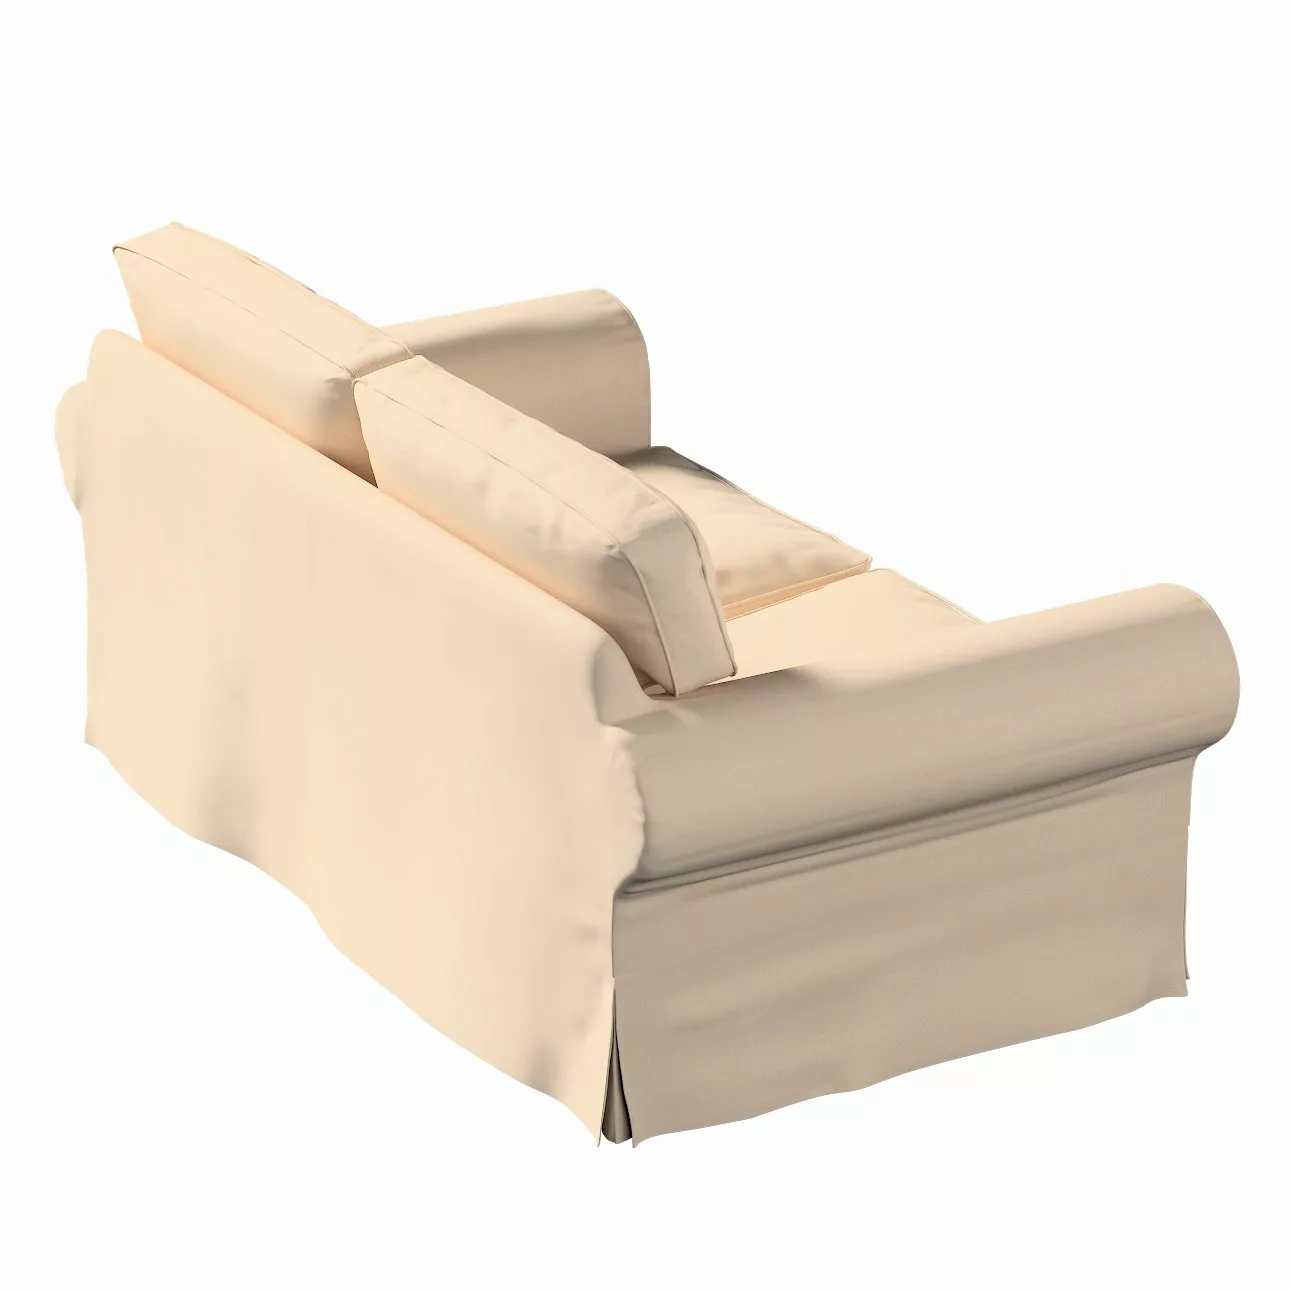 Bezug für Ektorp 2-Sitzer Sofa nicht ausklappbar, creme-beige, Sofabezug fü günstig online kaufen